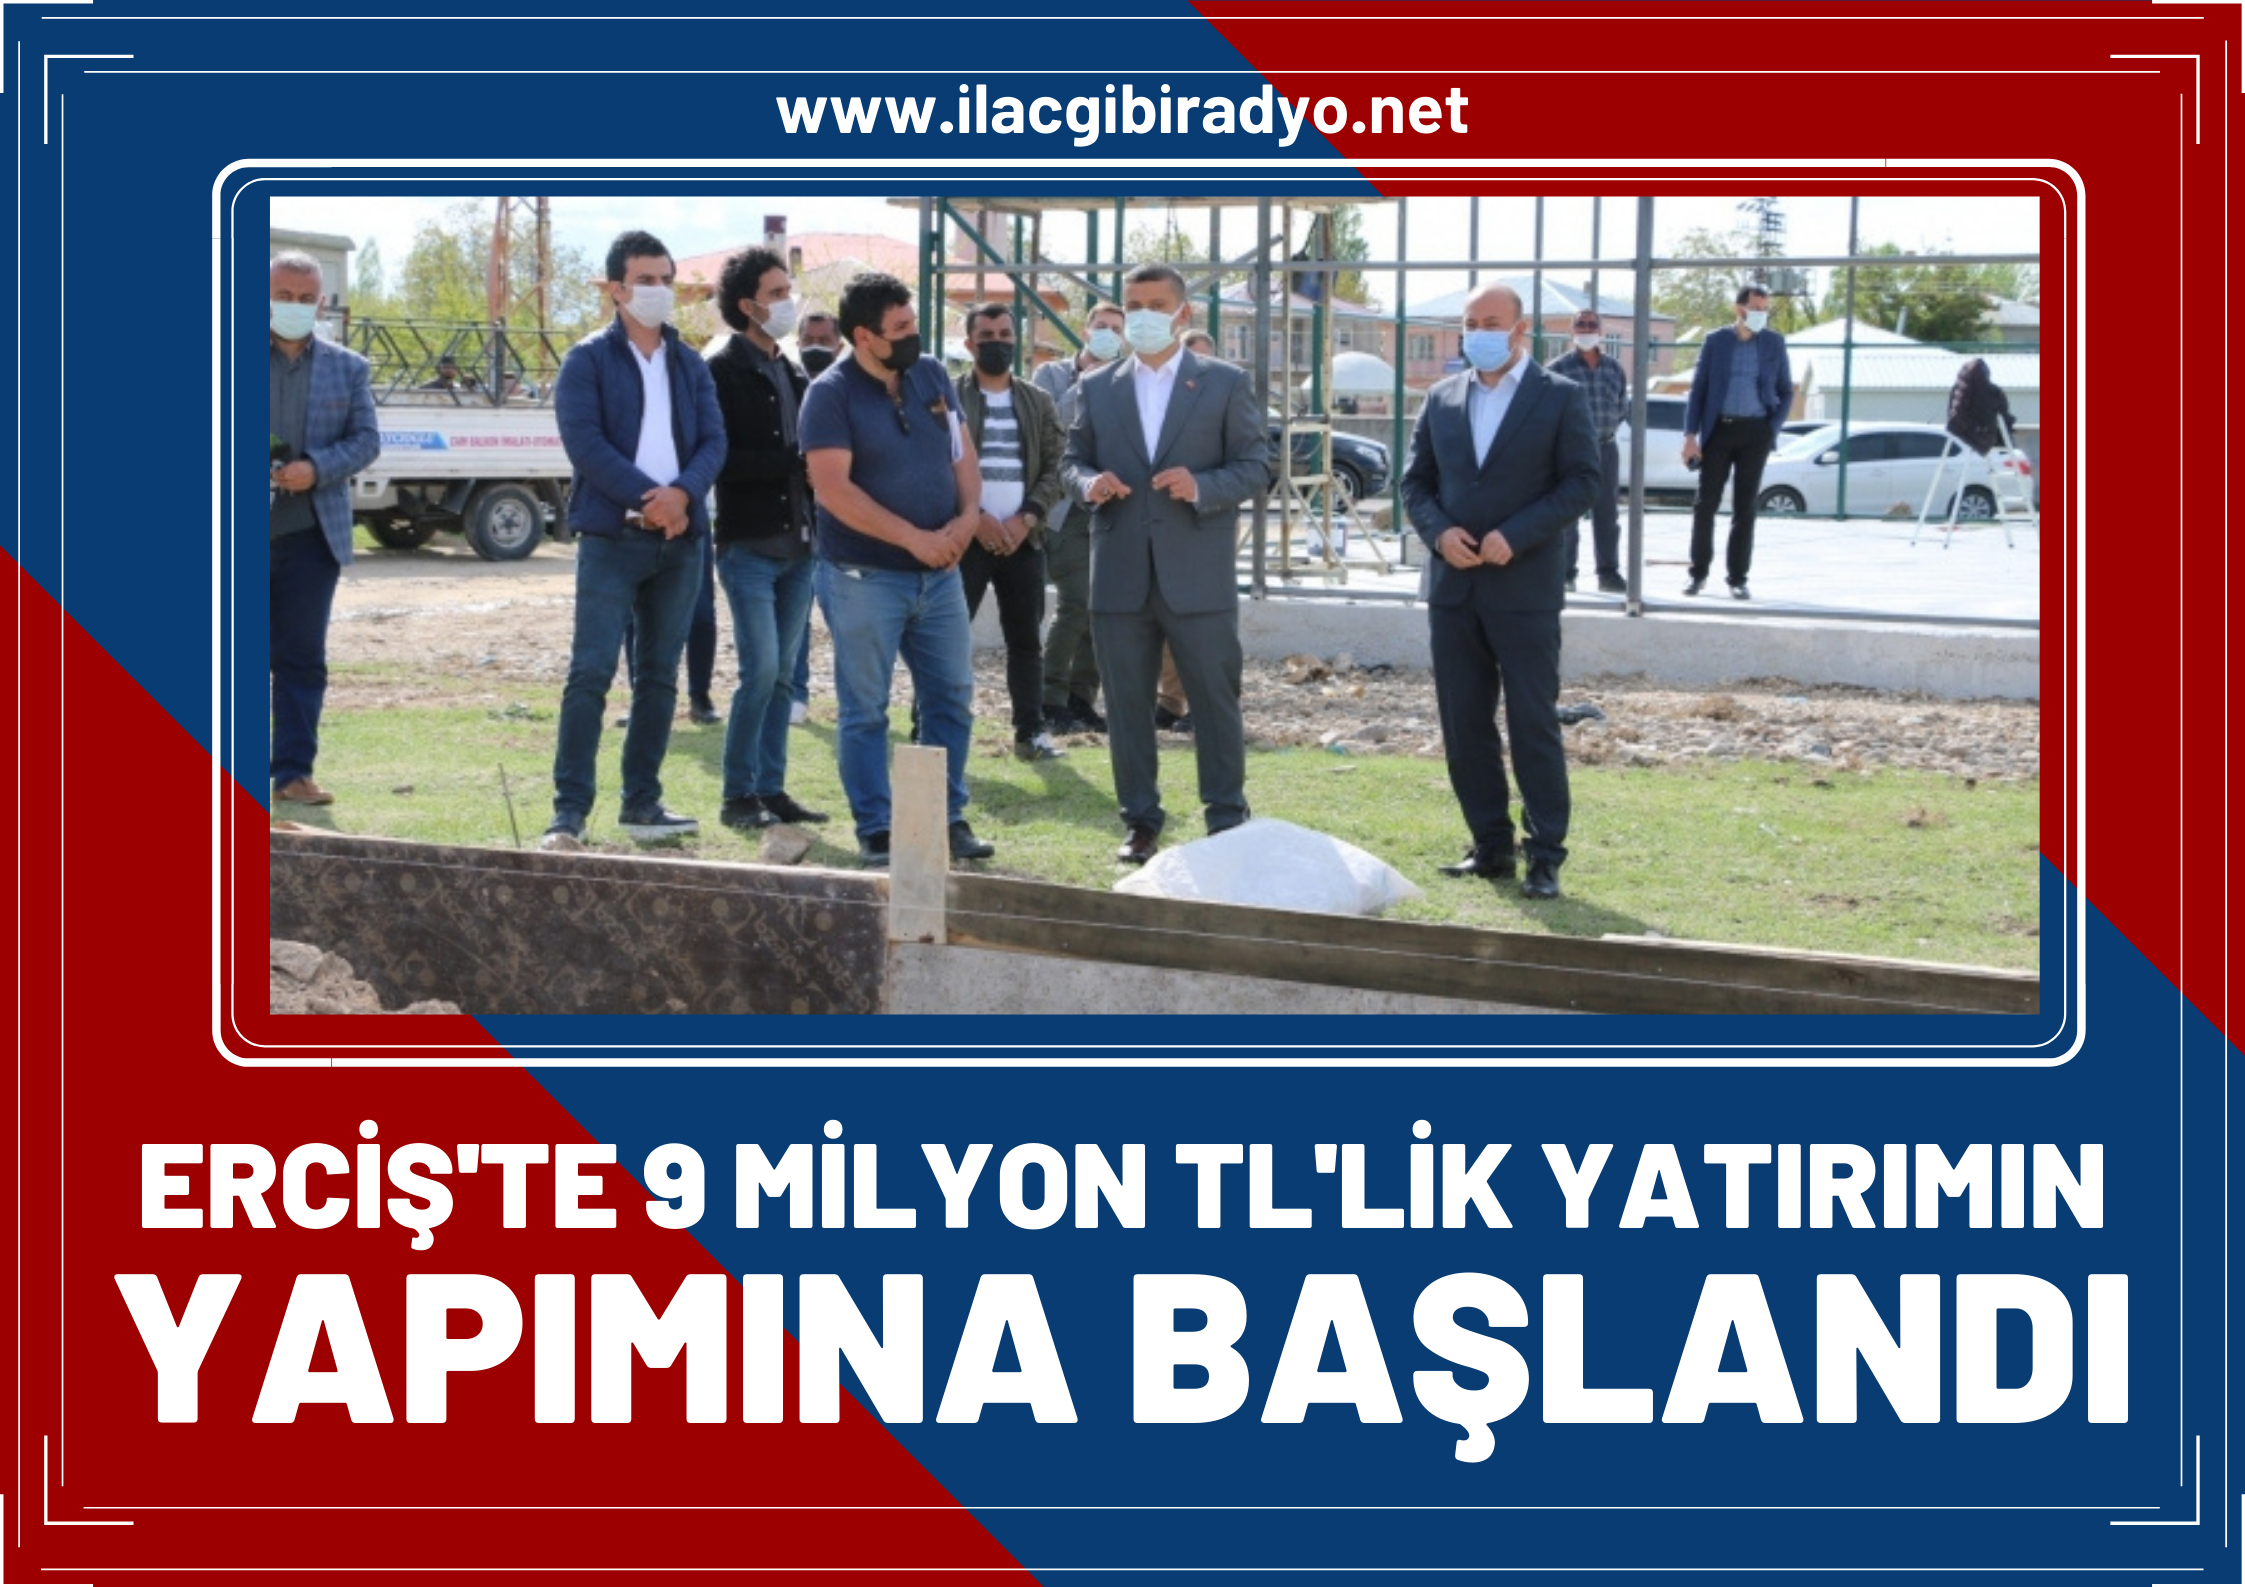 Erciş’te 9 milyon TL'lik yatırımın yapımına başlandı